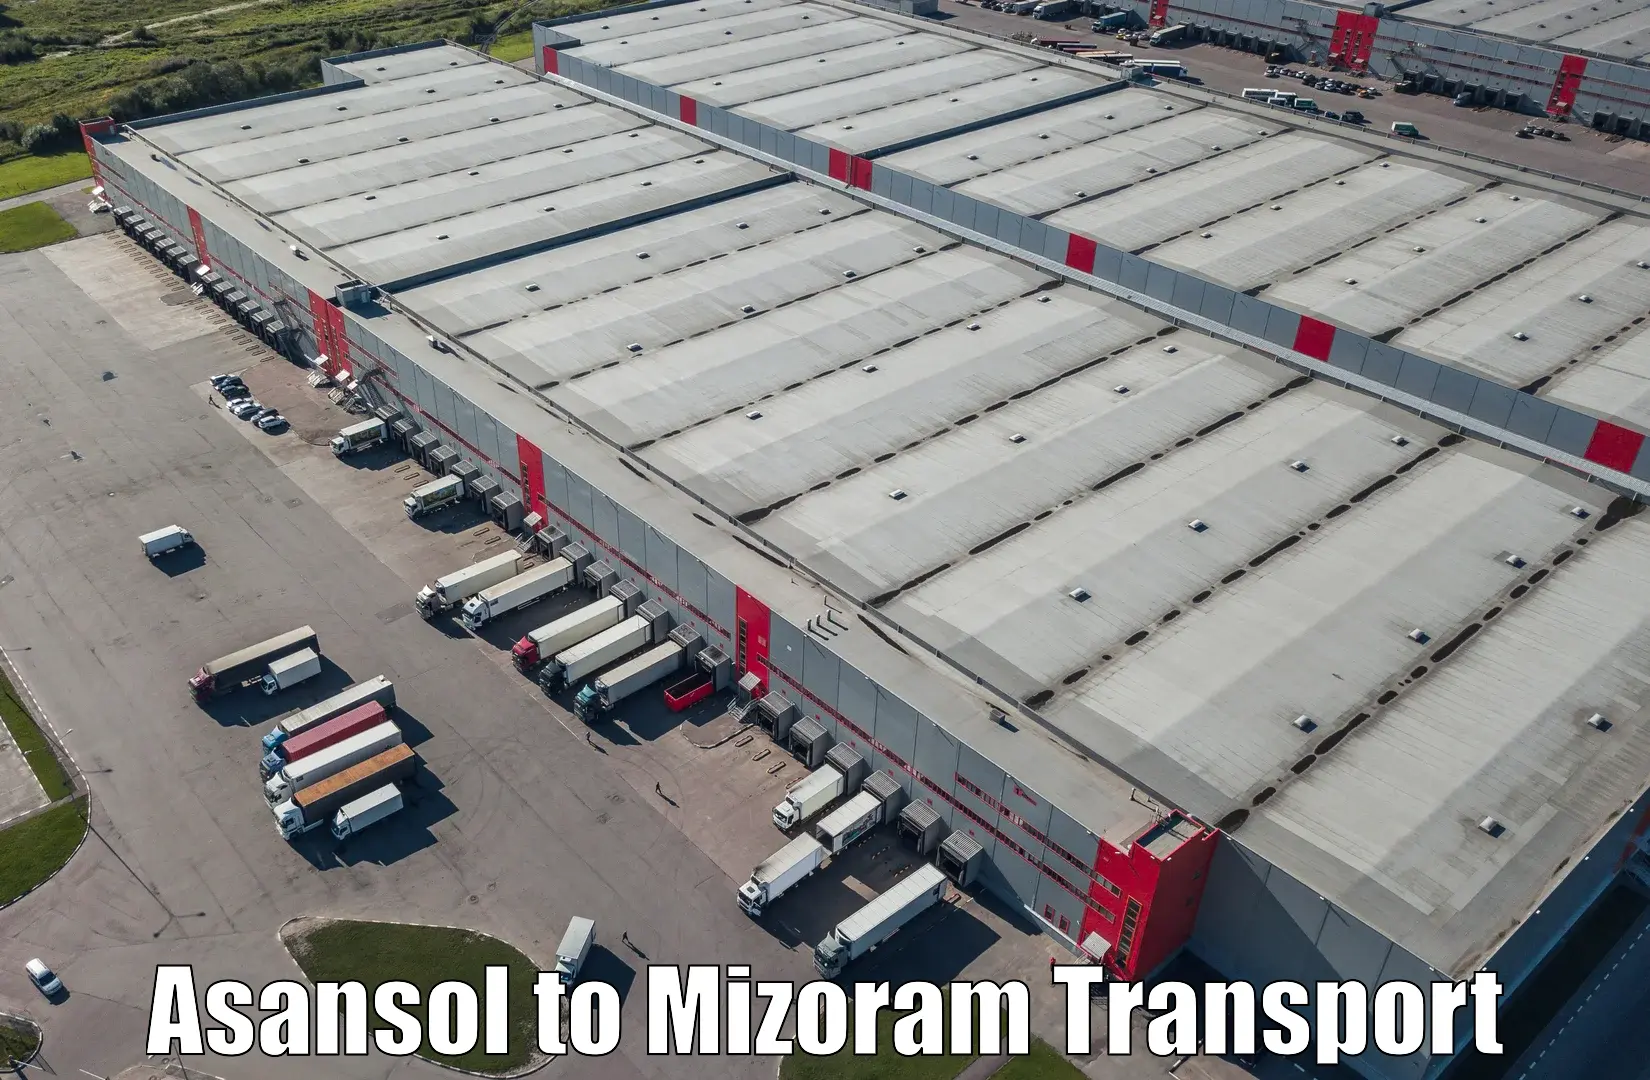 Furniture transport service Asansol to Khawzawl